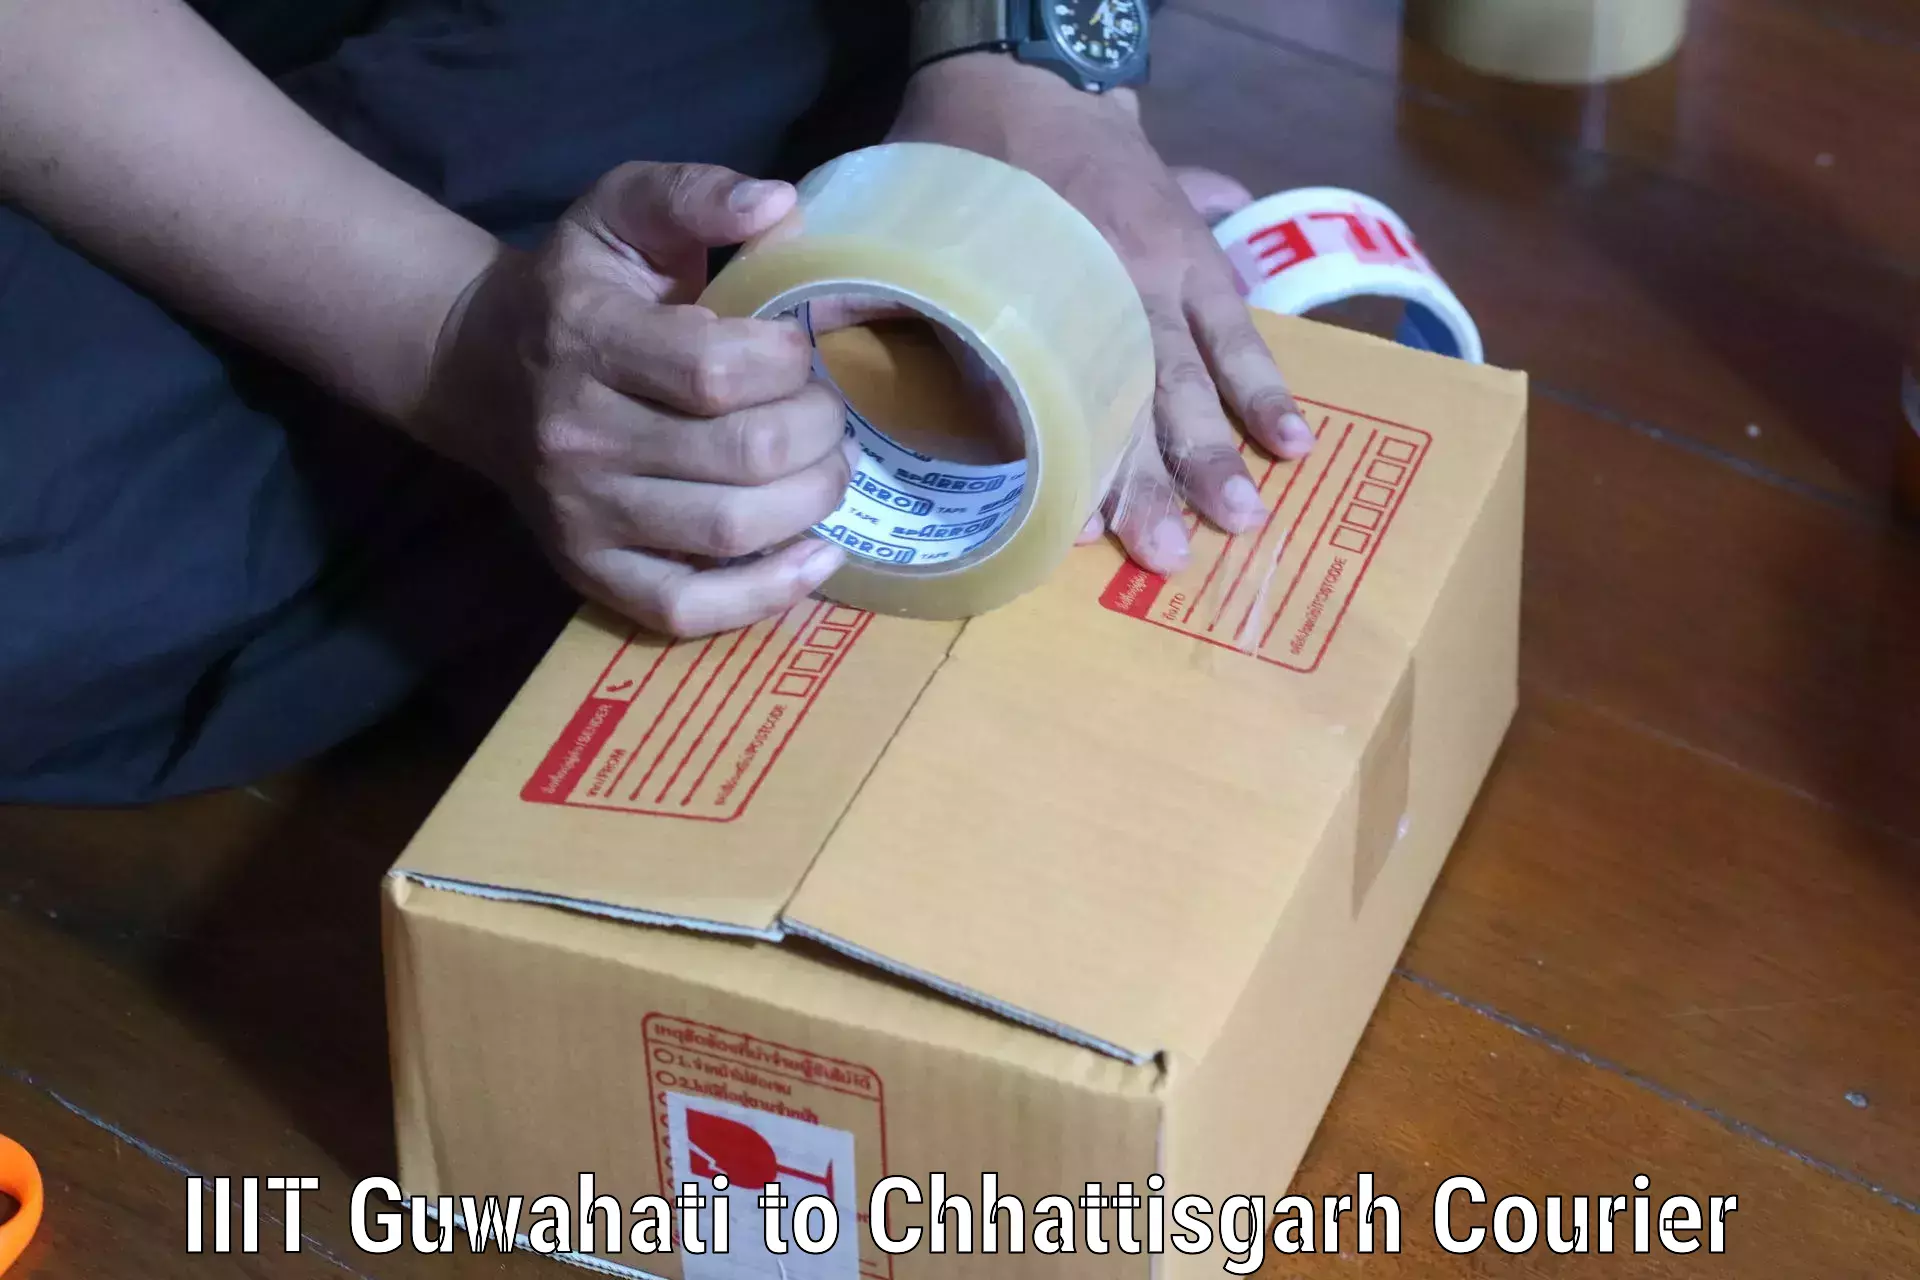 Specialized courier services IIIT Guwahati to Raigarh Chhattisgarh